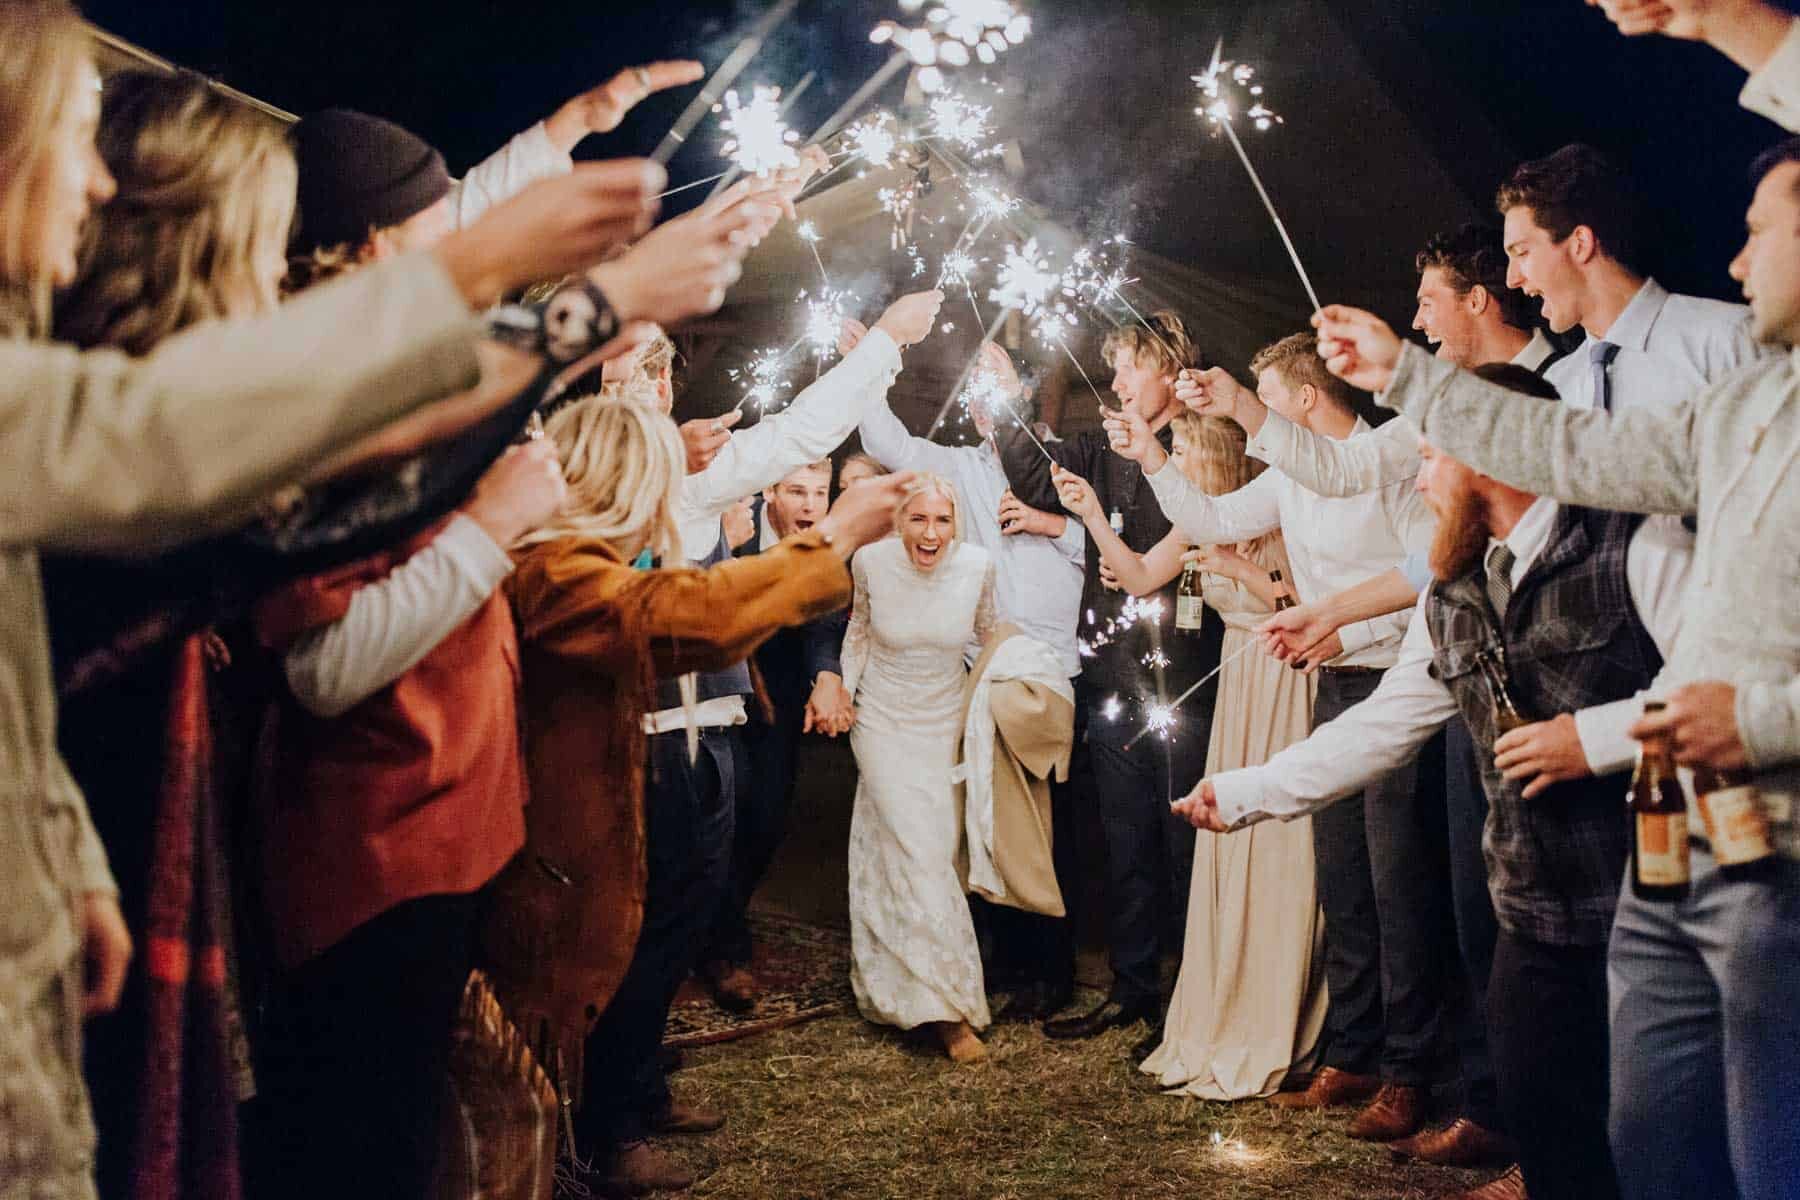 sparkler wedding exit